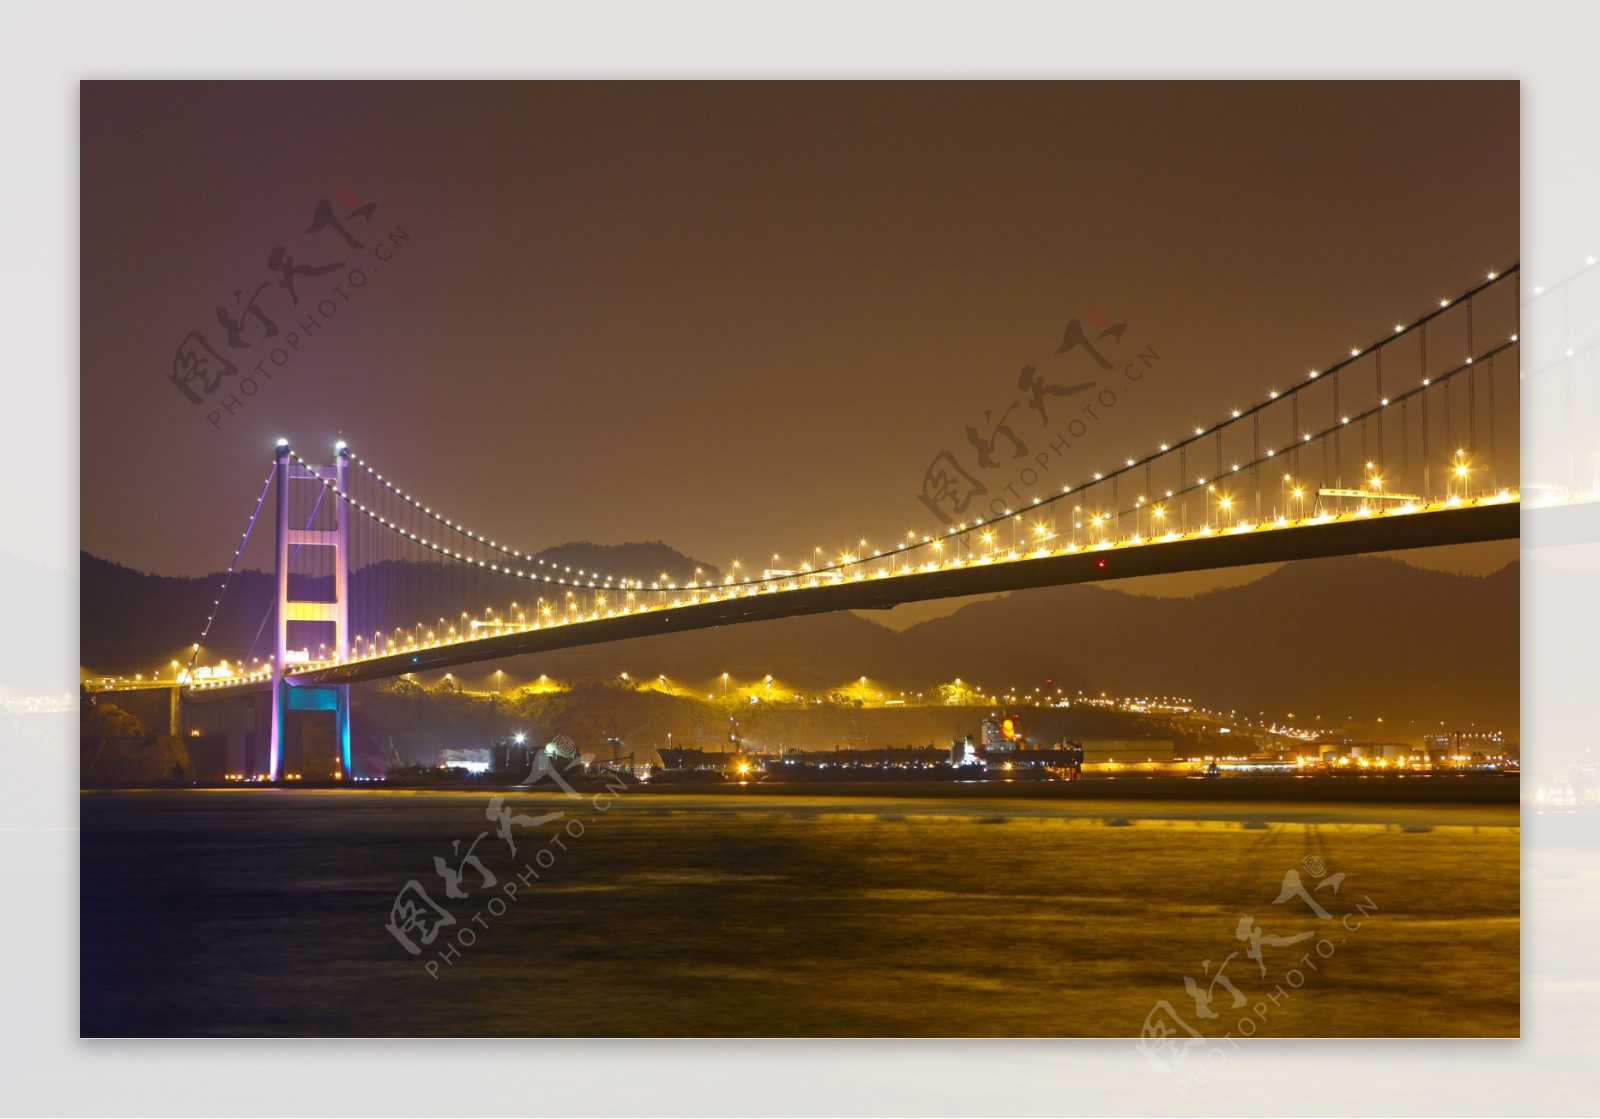 灯光璀璨的海上桥梁夜景图片